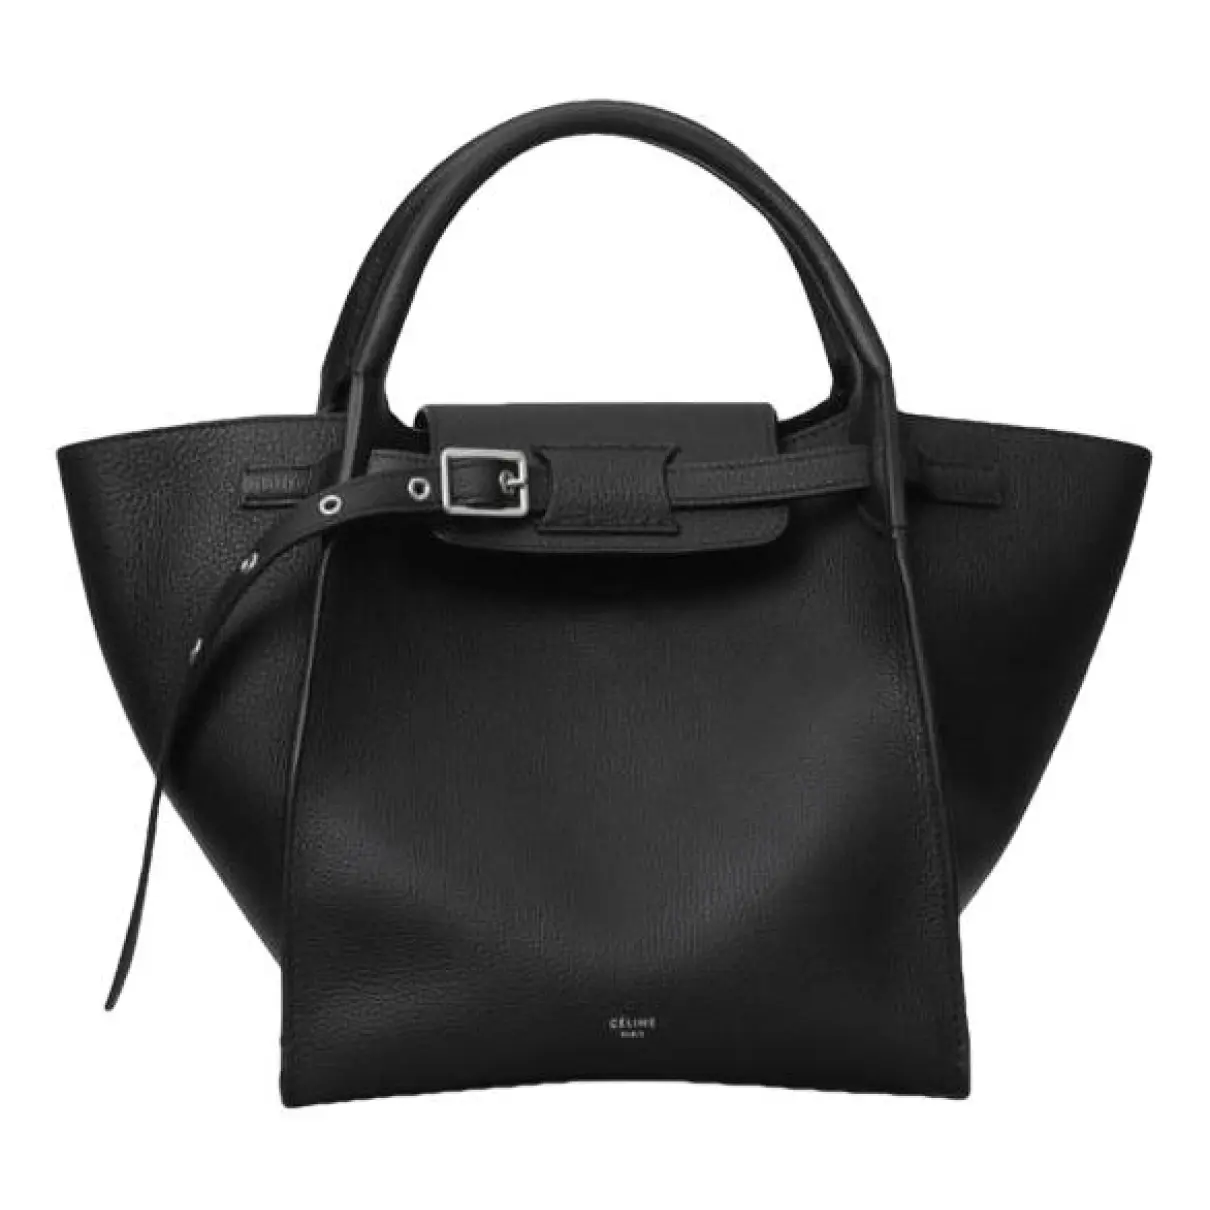 Big Bag leather handbag